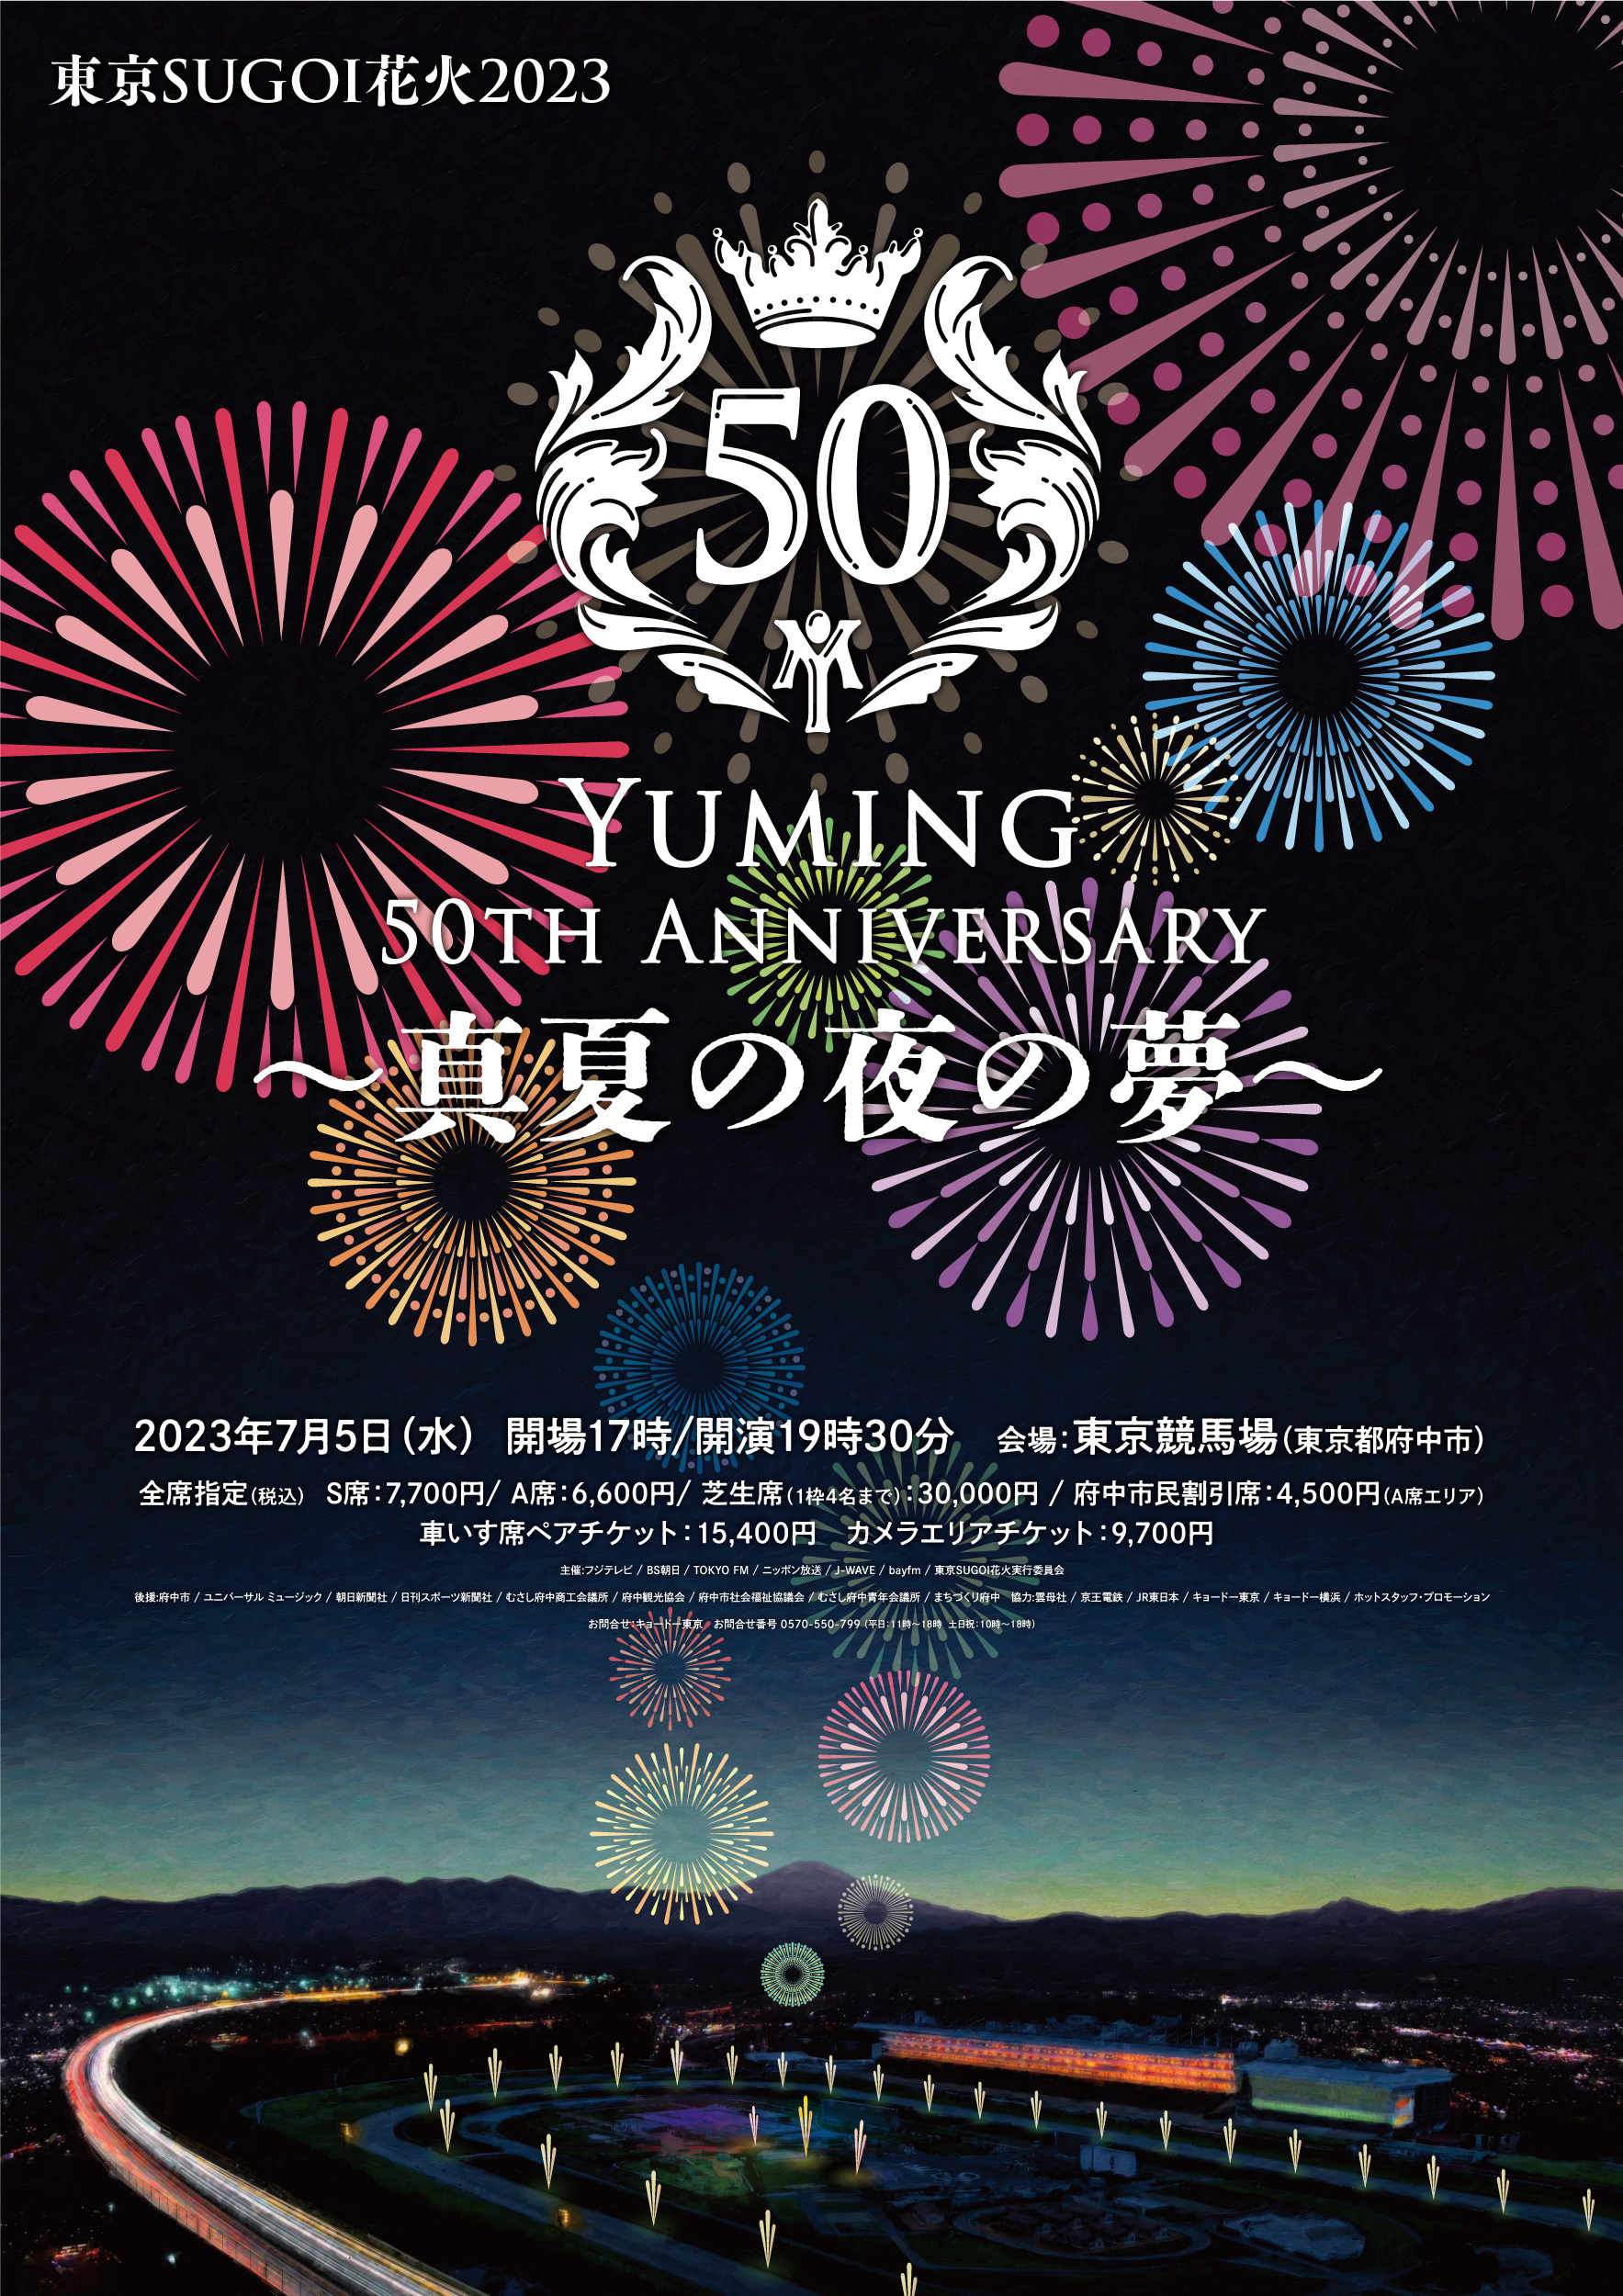 東京SUGOI花火2023「Yuming 50th Anniversary 〜真夏の夜の夢